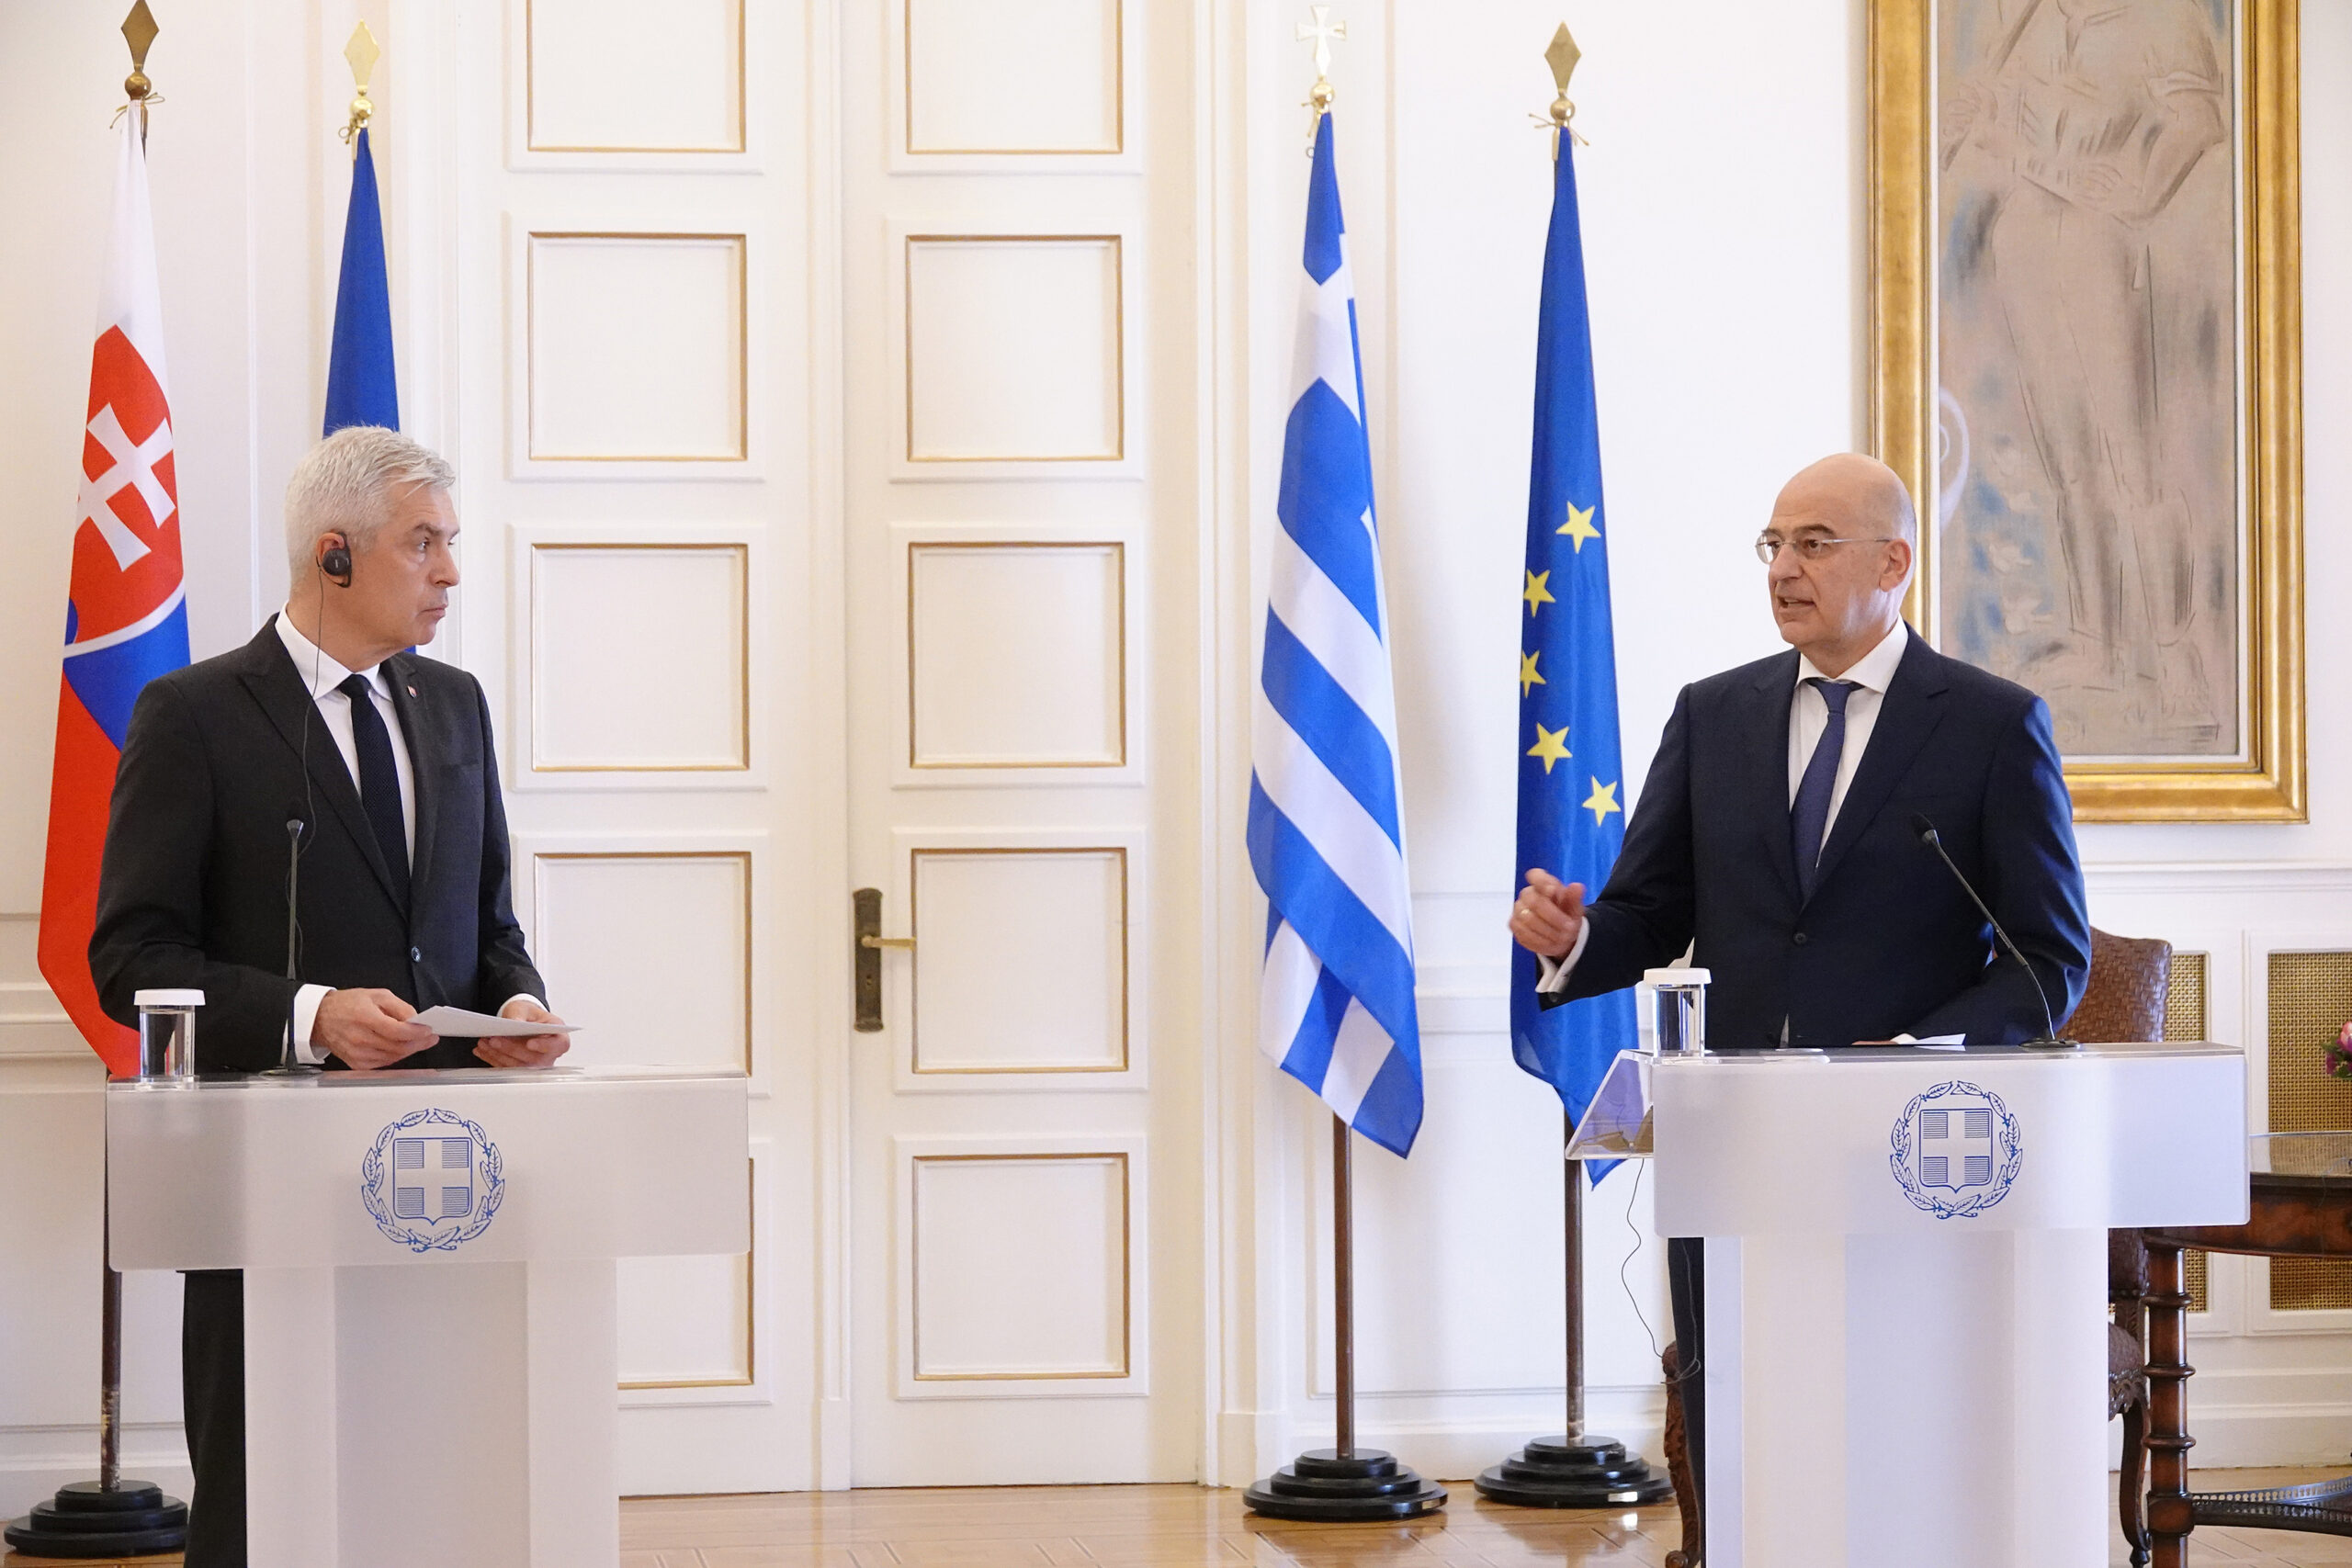 Συνάντηση Υπουργού Εξωτερικών, Νίκου Δένδια, με τον Υπουργό Εξωτερικών της Σλοβακίας, Ivan Korčok  (Αθήνα, 21.04.2021)